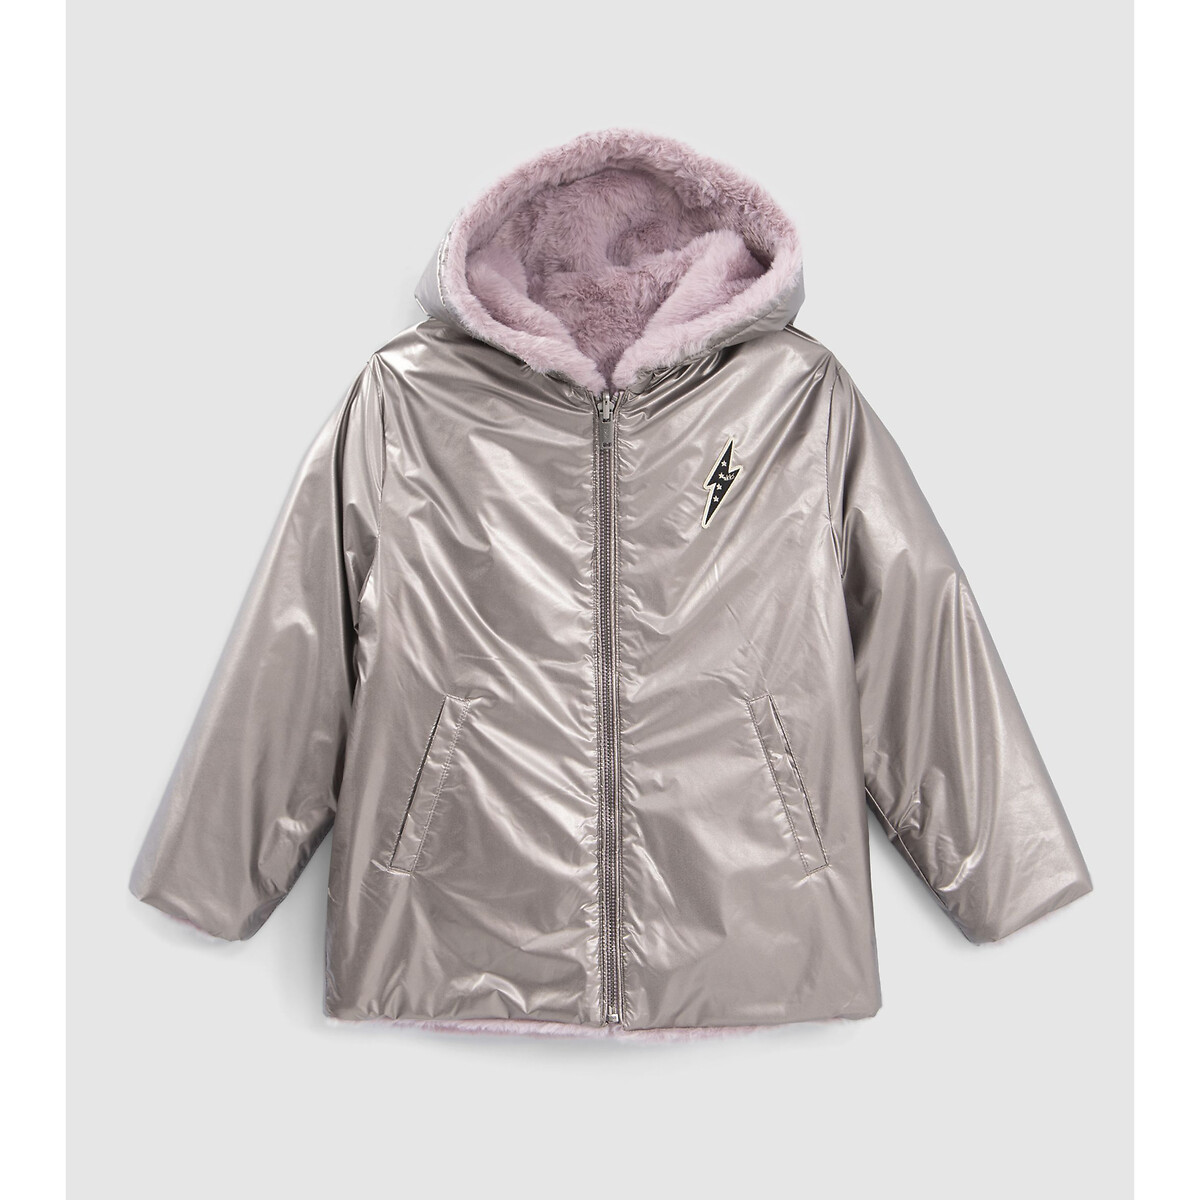 Куртка стеганая с капюшоном с металлическим отливом 6 лет - 114 см розовый куртка стеганая утепленная с капюшоном средней длины 6 лет 114 см каштановый